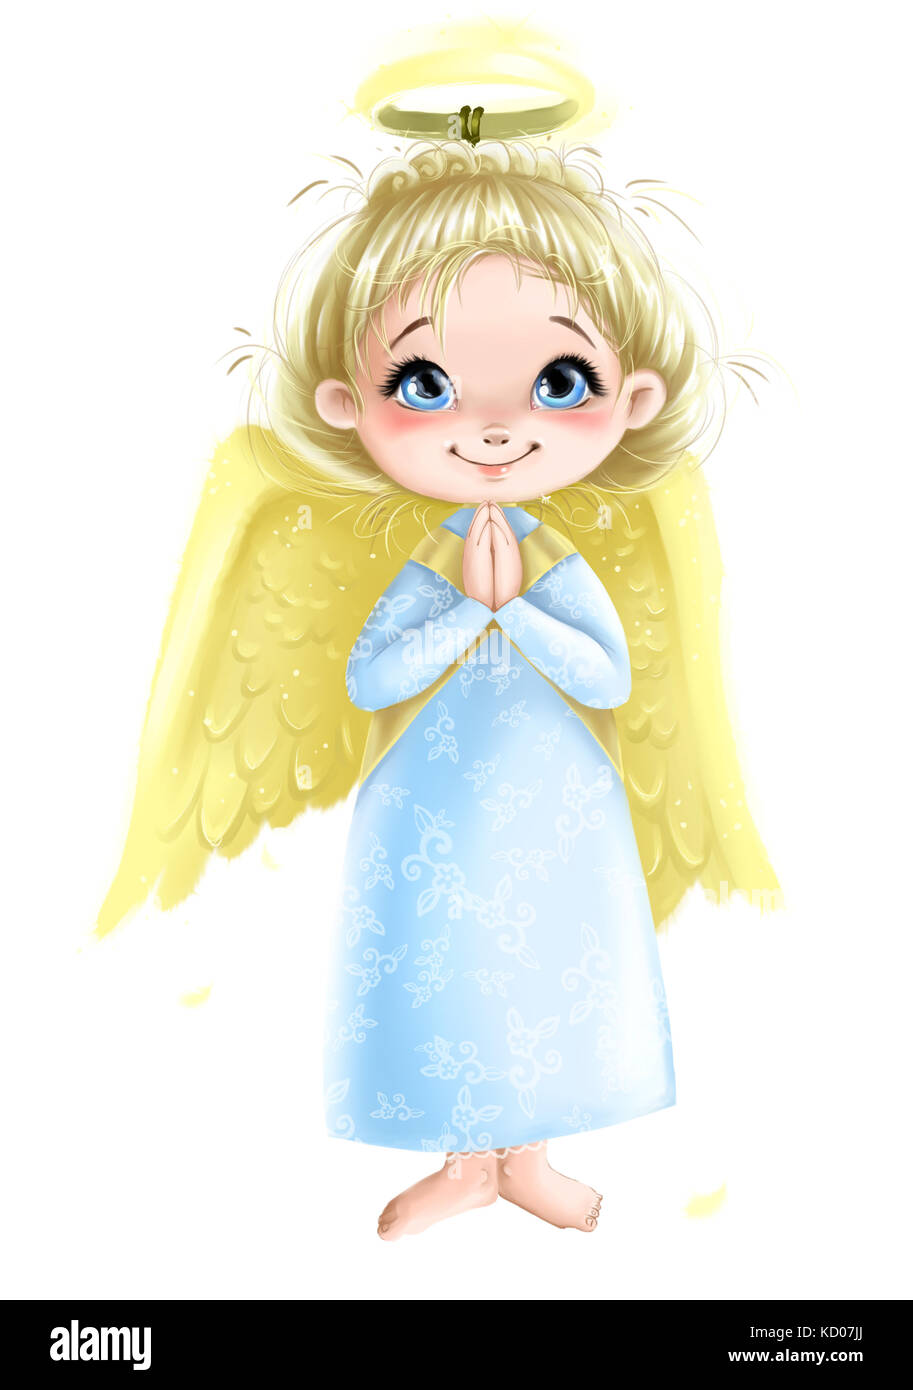 Mignon Angel girl avec des ailes priant illustration transparente bakground Banque D'Images